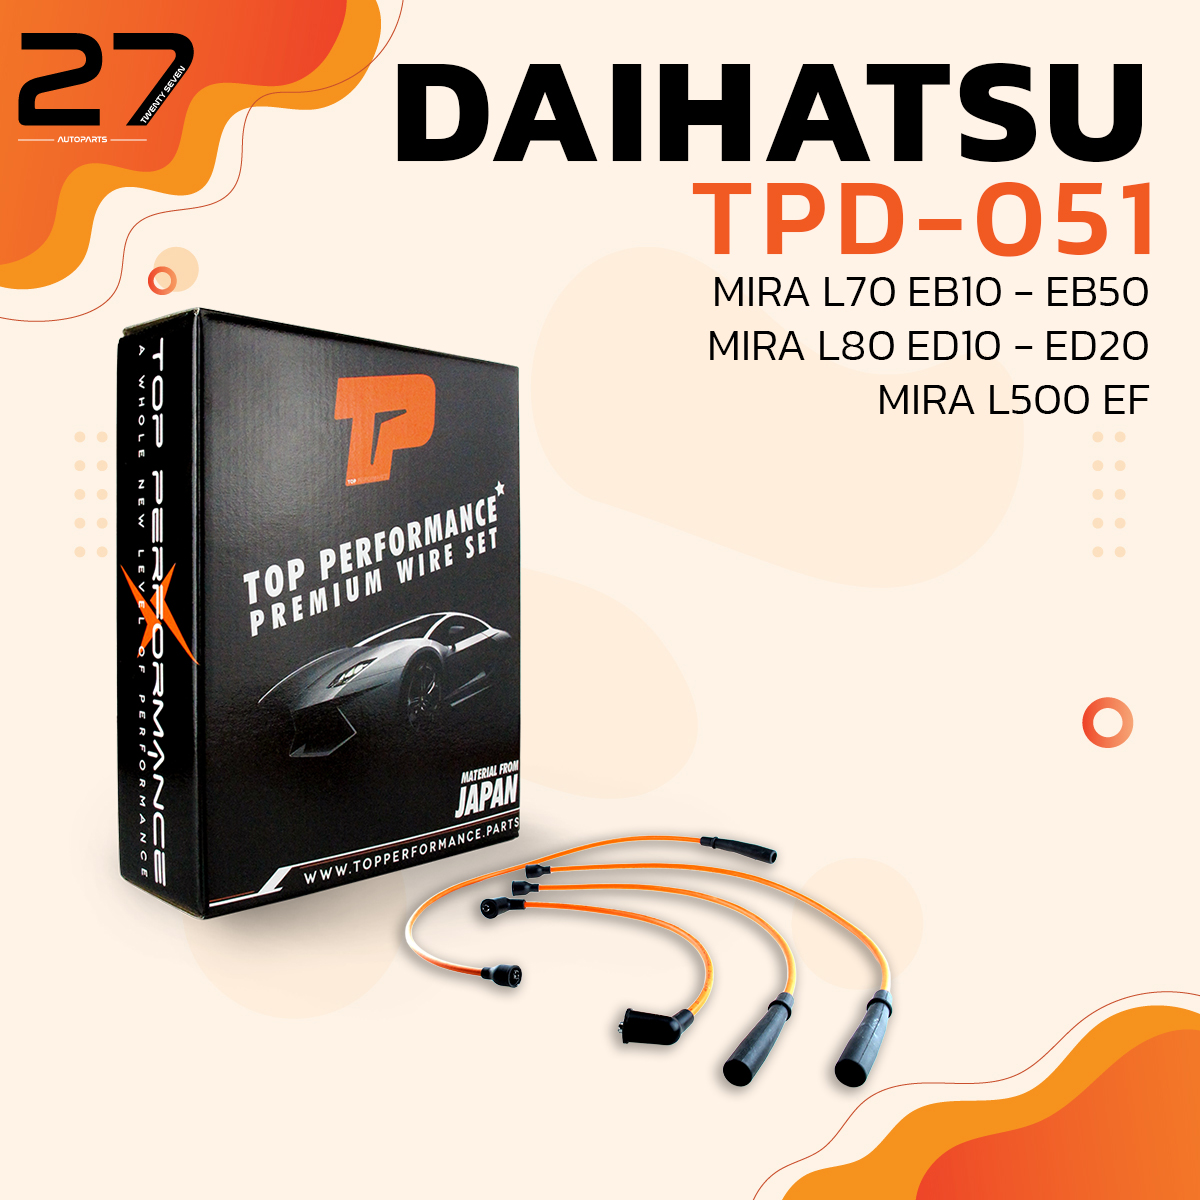 สายหัวเทียน DAIHATSU MIRA L70 EB10-50 / MIRA L80 ED10-20 / MIRA L500 EF  - TOP PERFORMANCE MADE IN JAPAN - TPD-051 - สายคอยล์ ไดฮัทสุ มิร่า